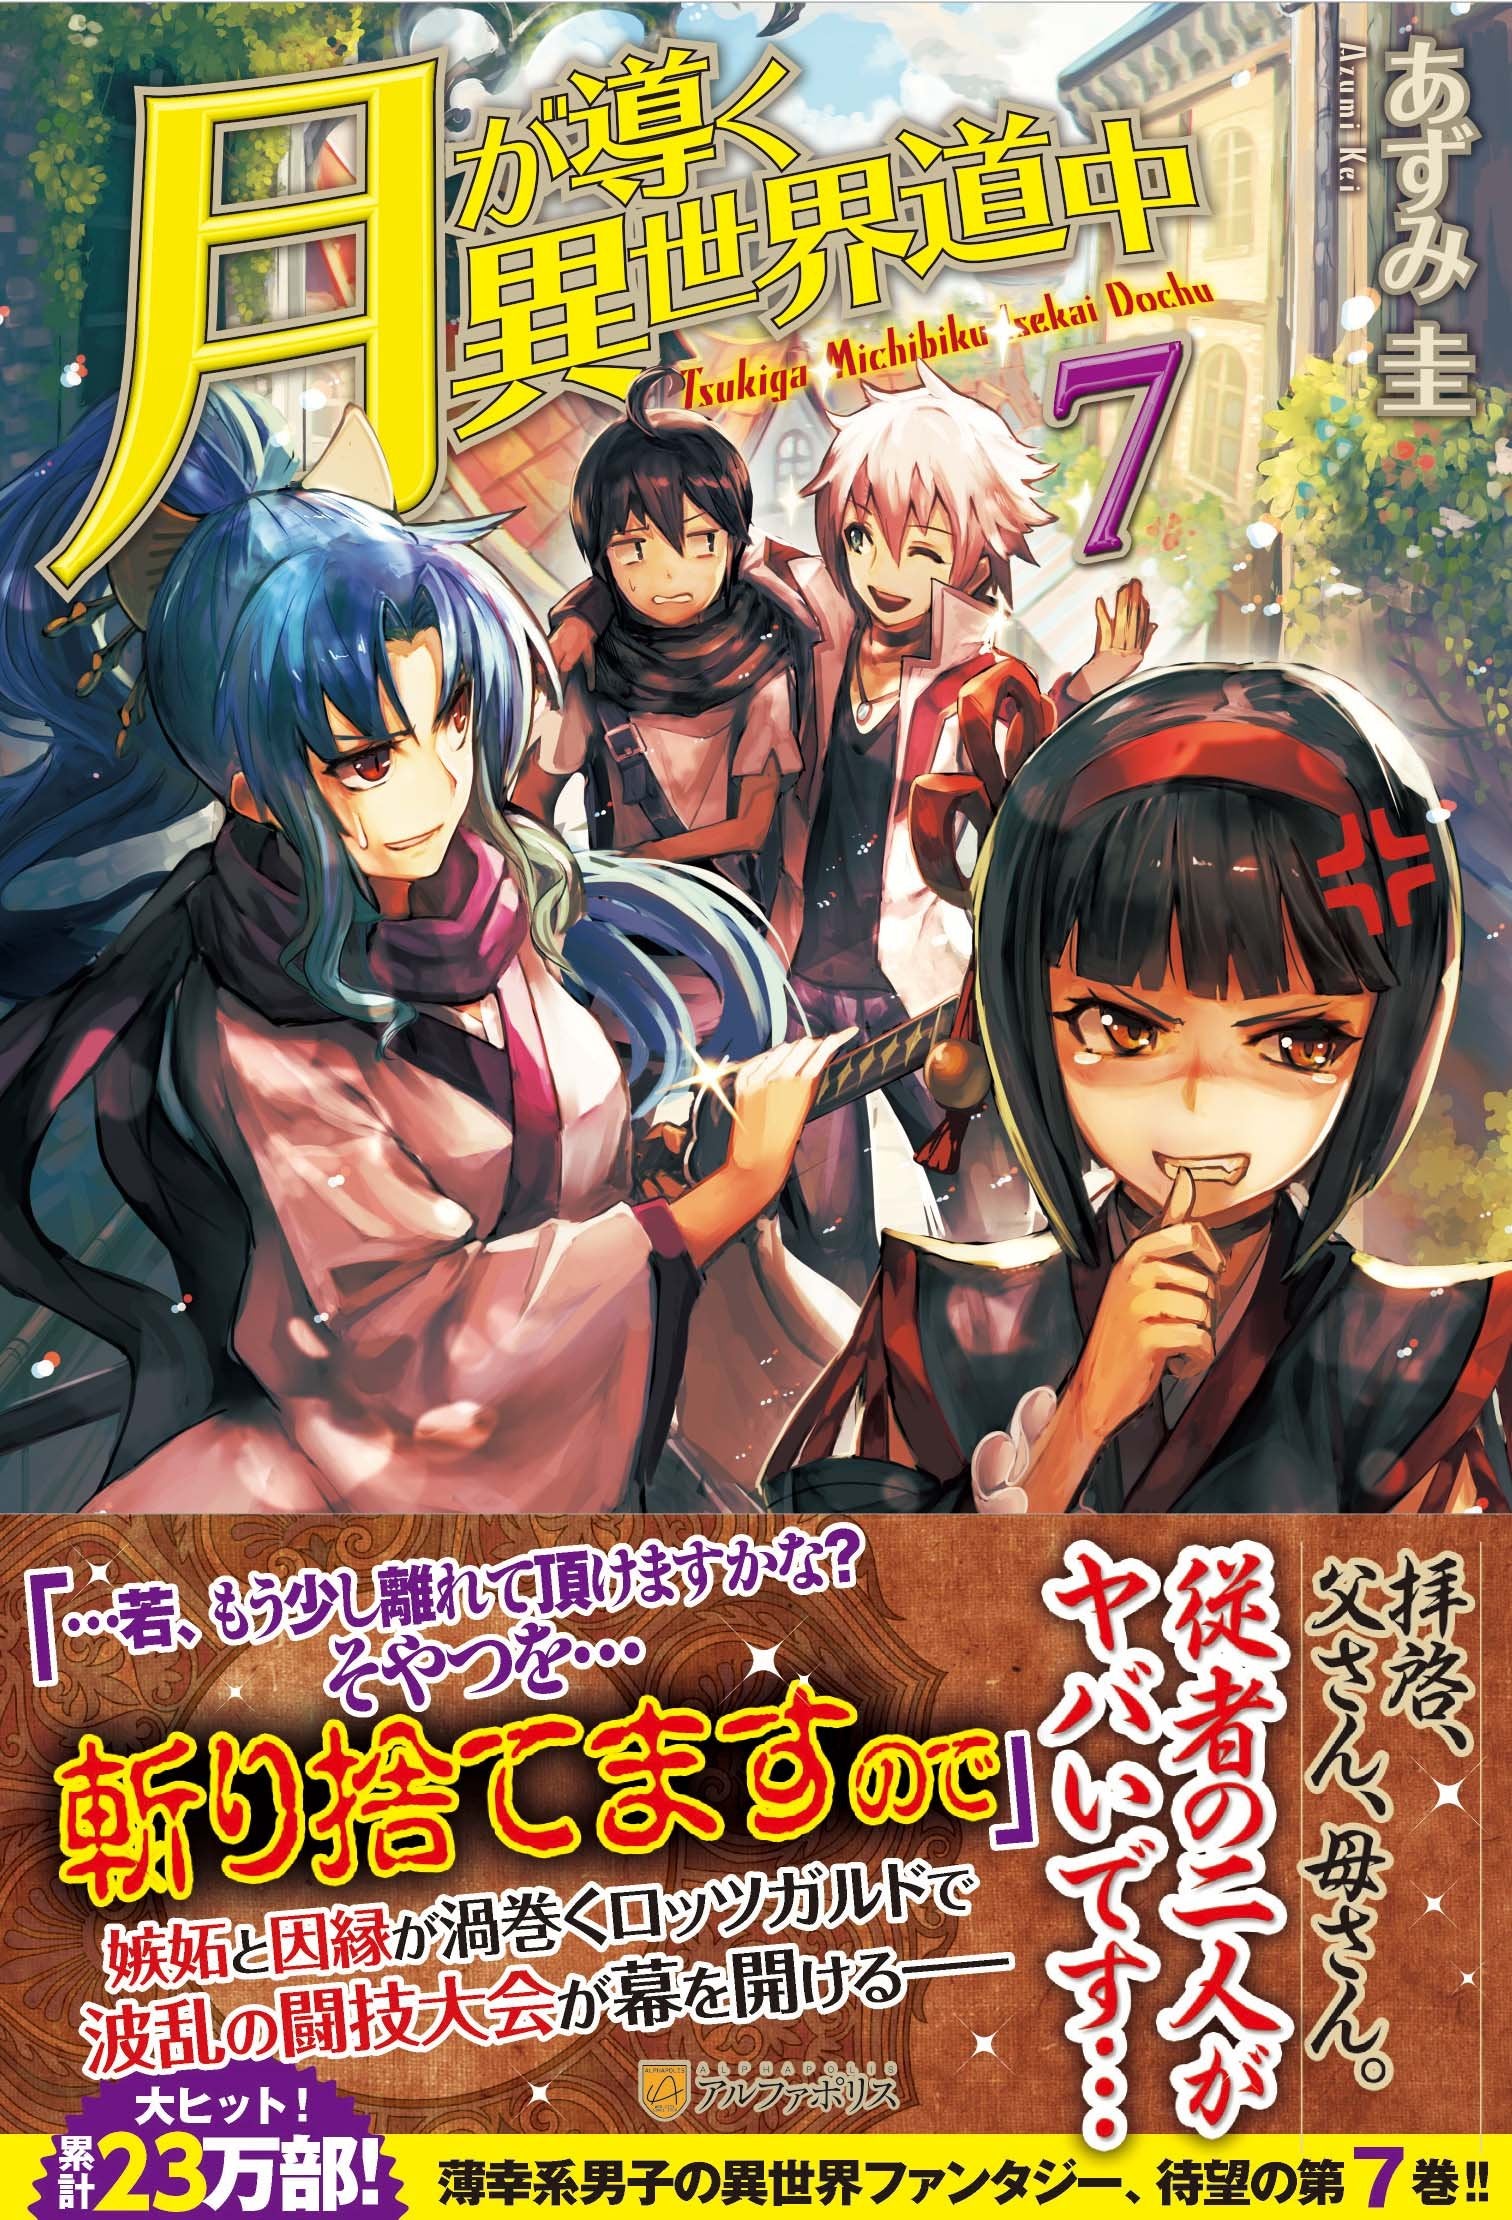 DVD ANIME TSUKIMICHI Moonlit Fantasy / Tsuki ga Michibiku Isekai